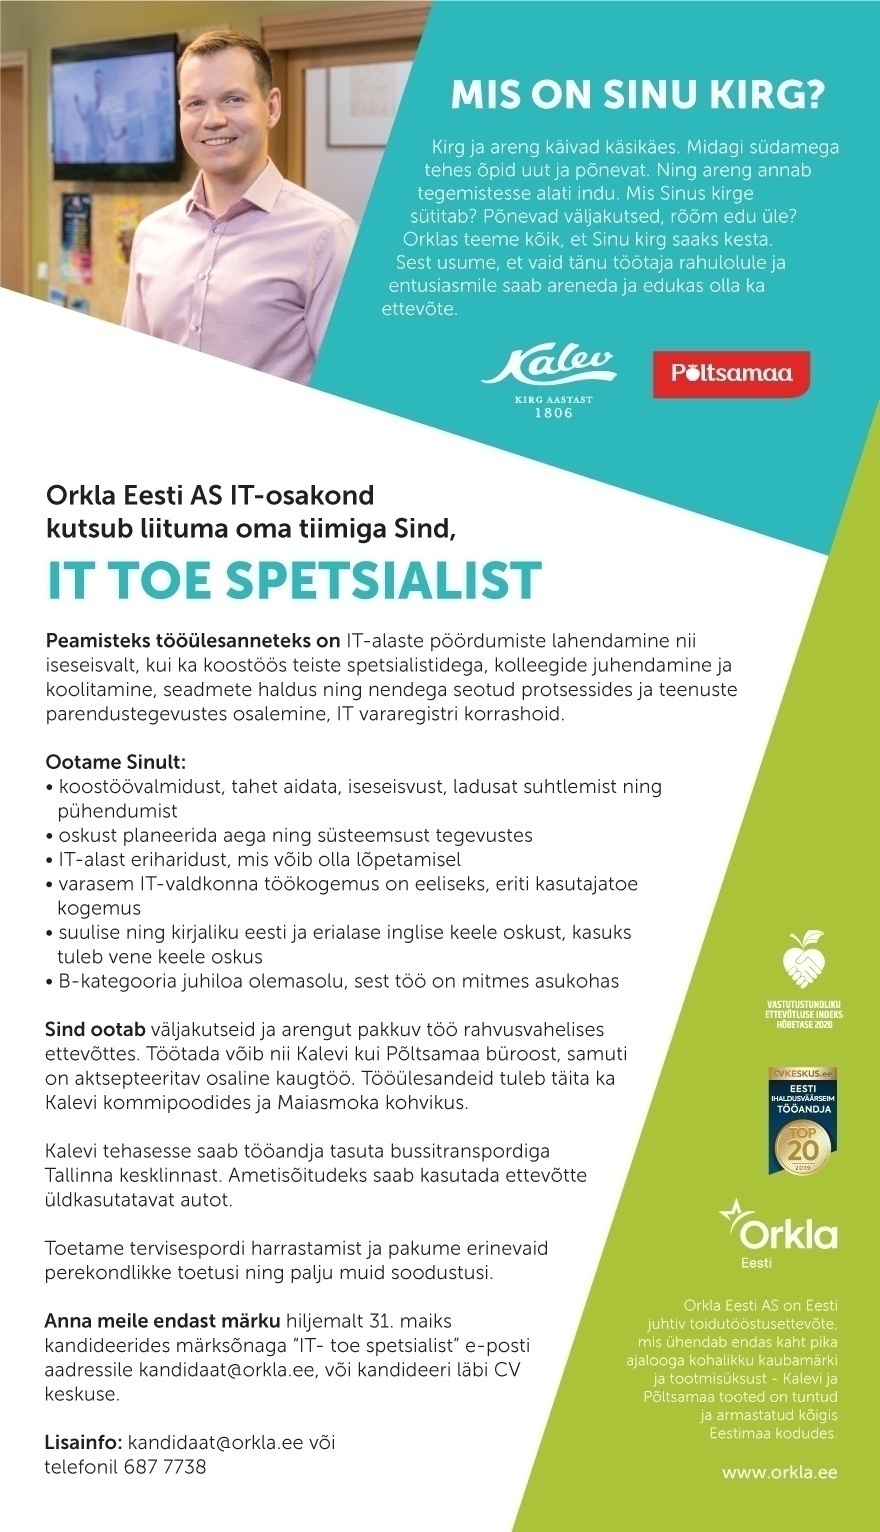 Orkla Eesti AS IT TOE SPETSIALIST